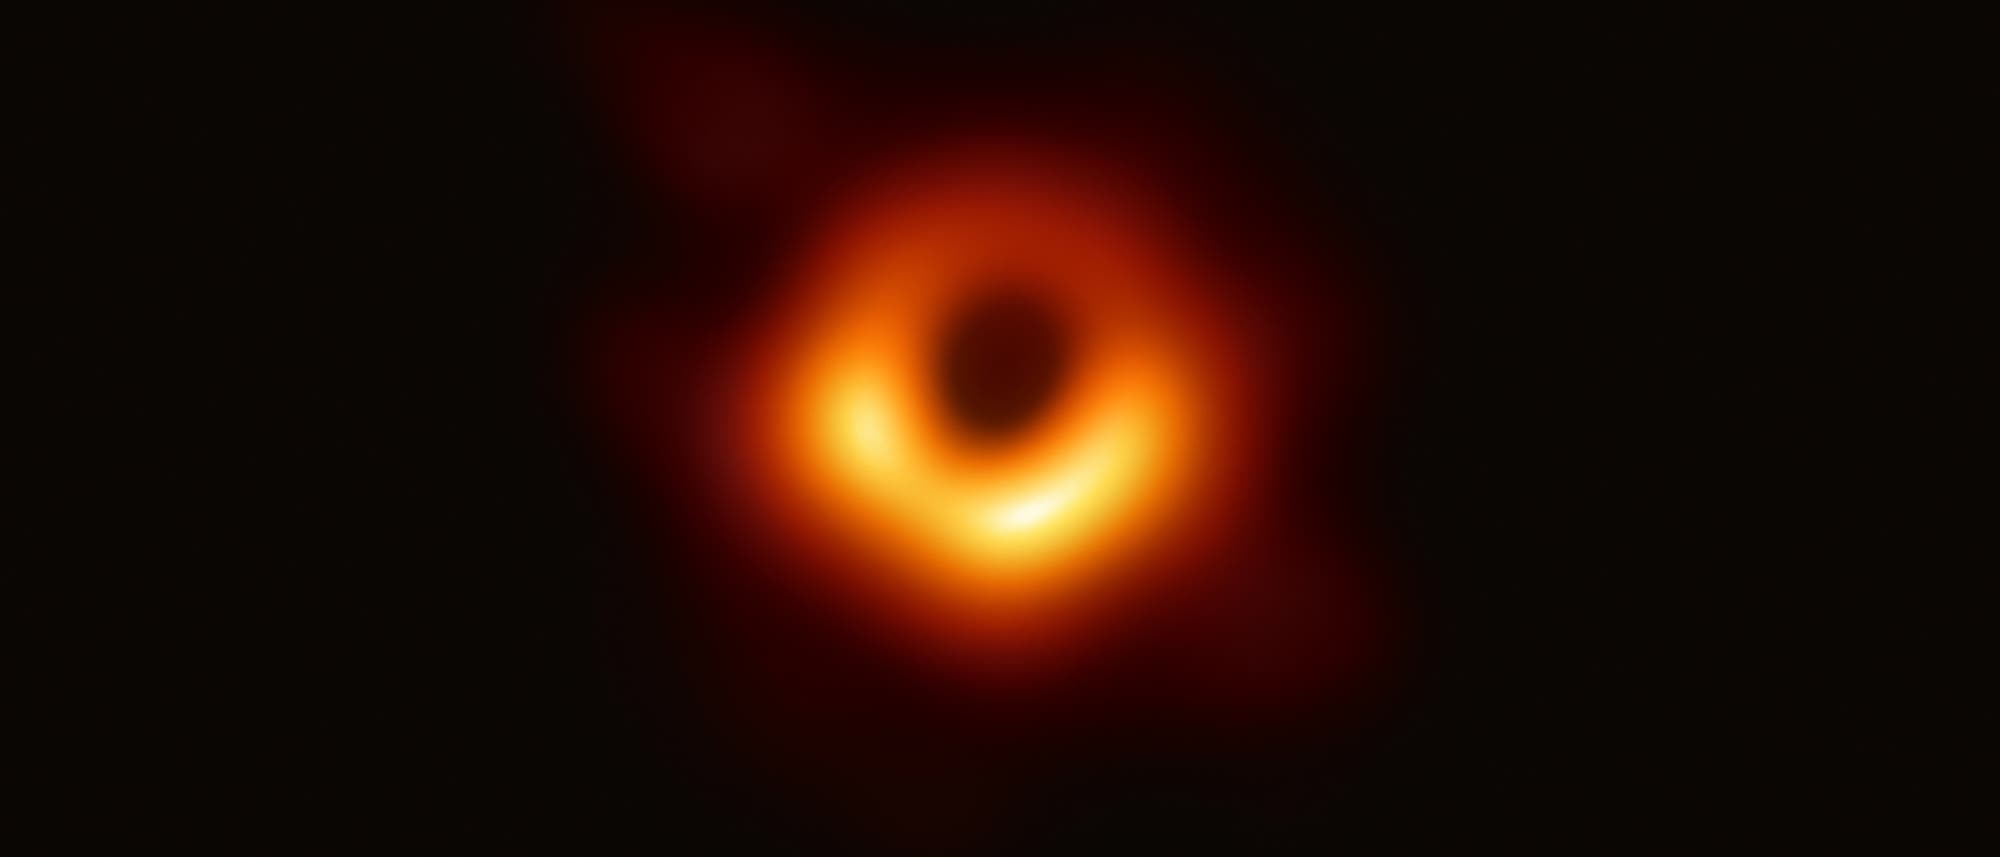 Das Schwarze Loch im Zentrum von Messier 87